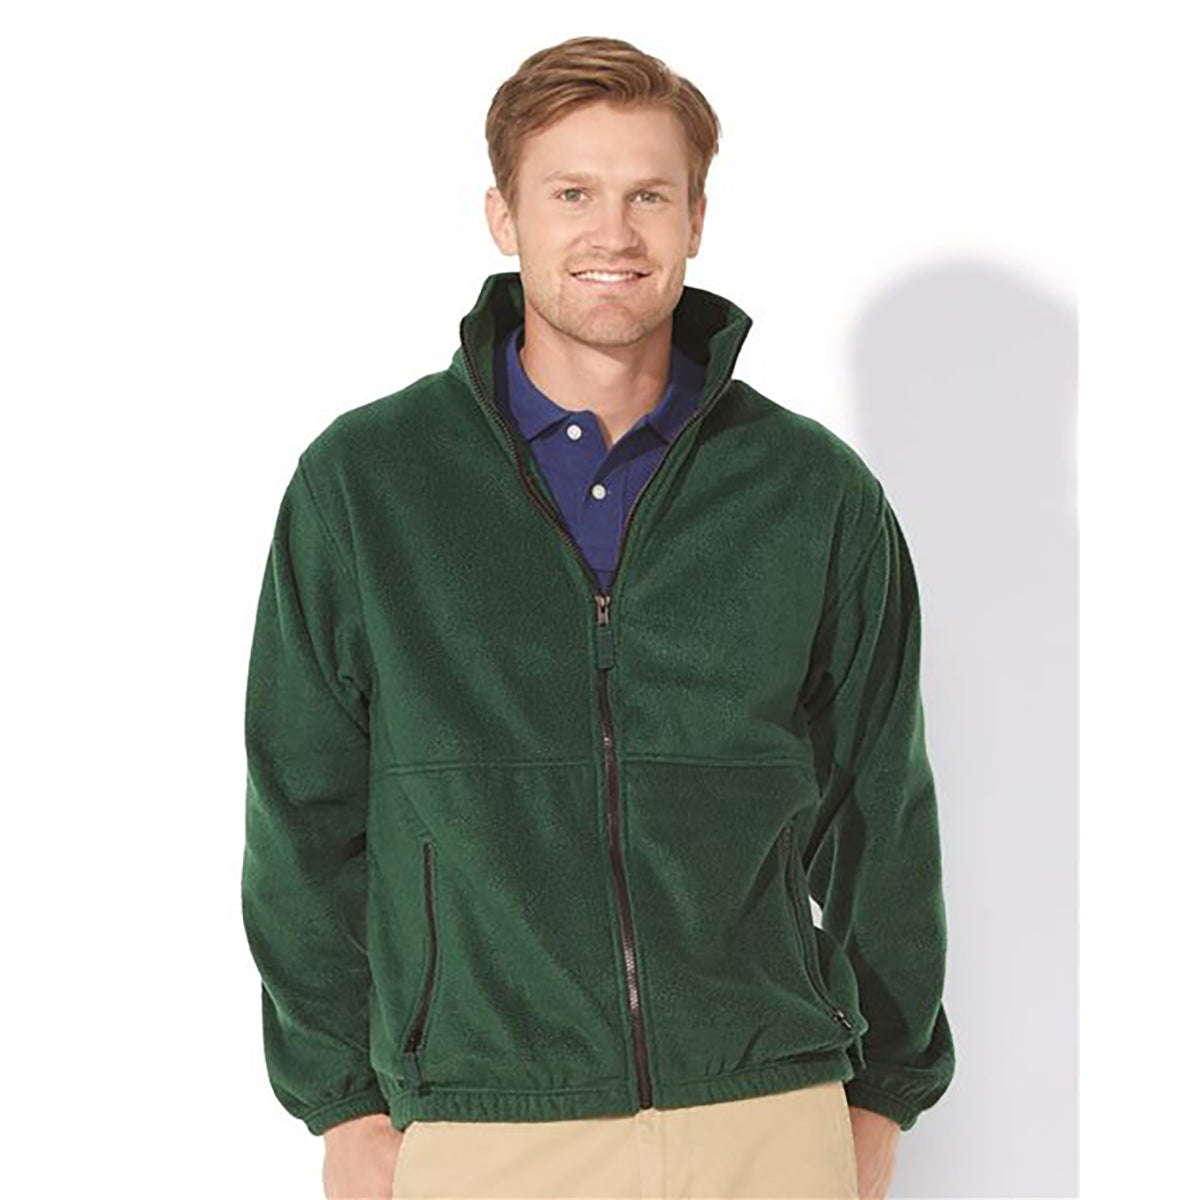 Loparex Sierra Pacific - Fleece Full-Zip Jacket